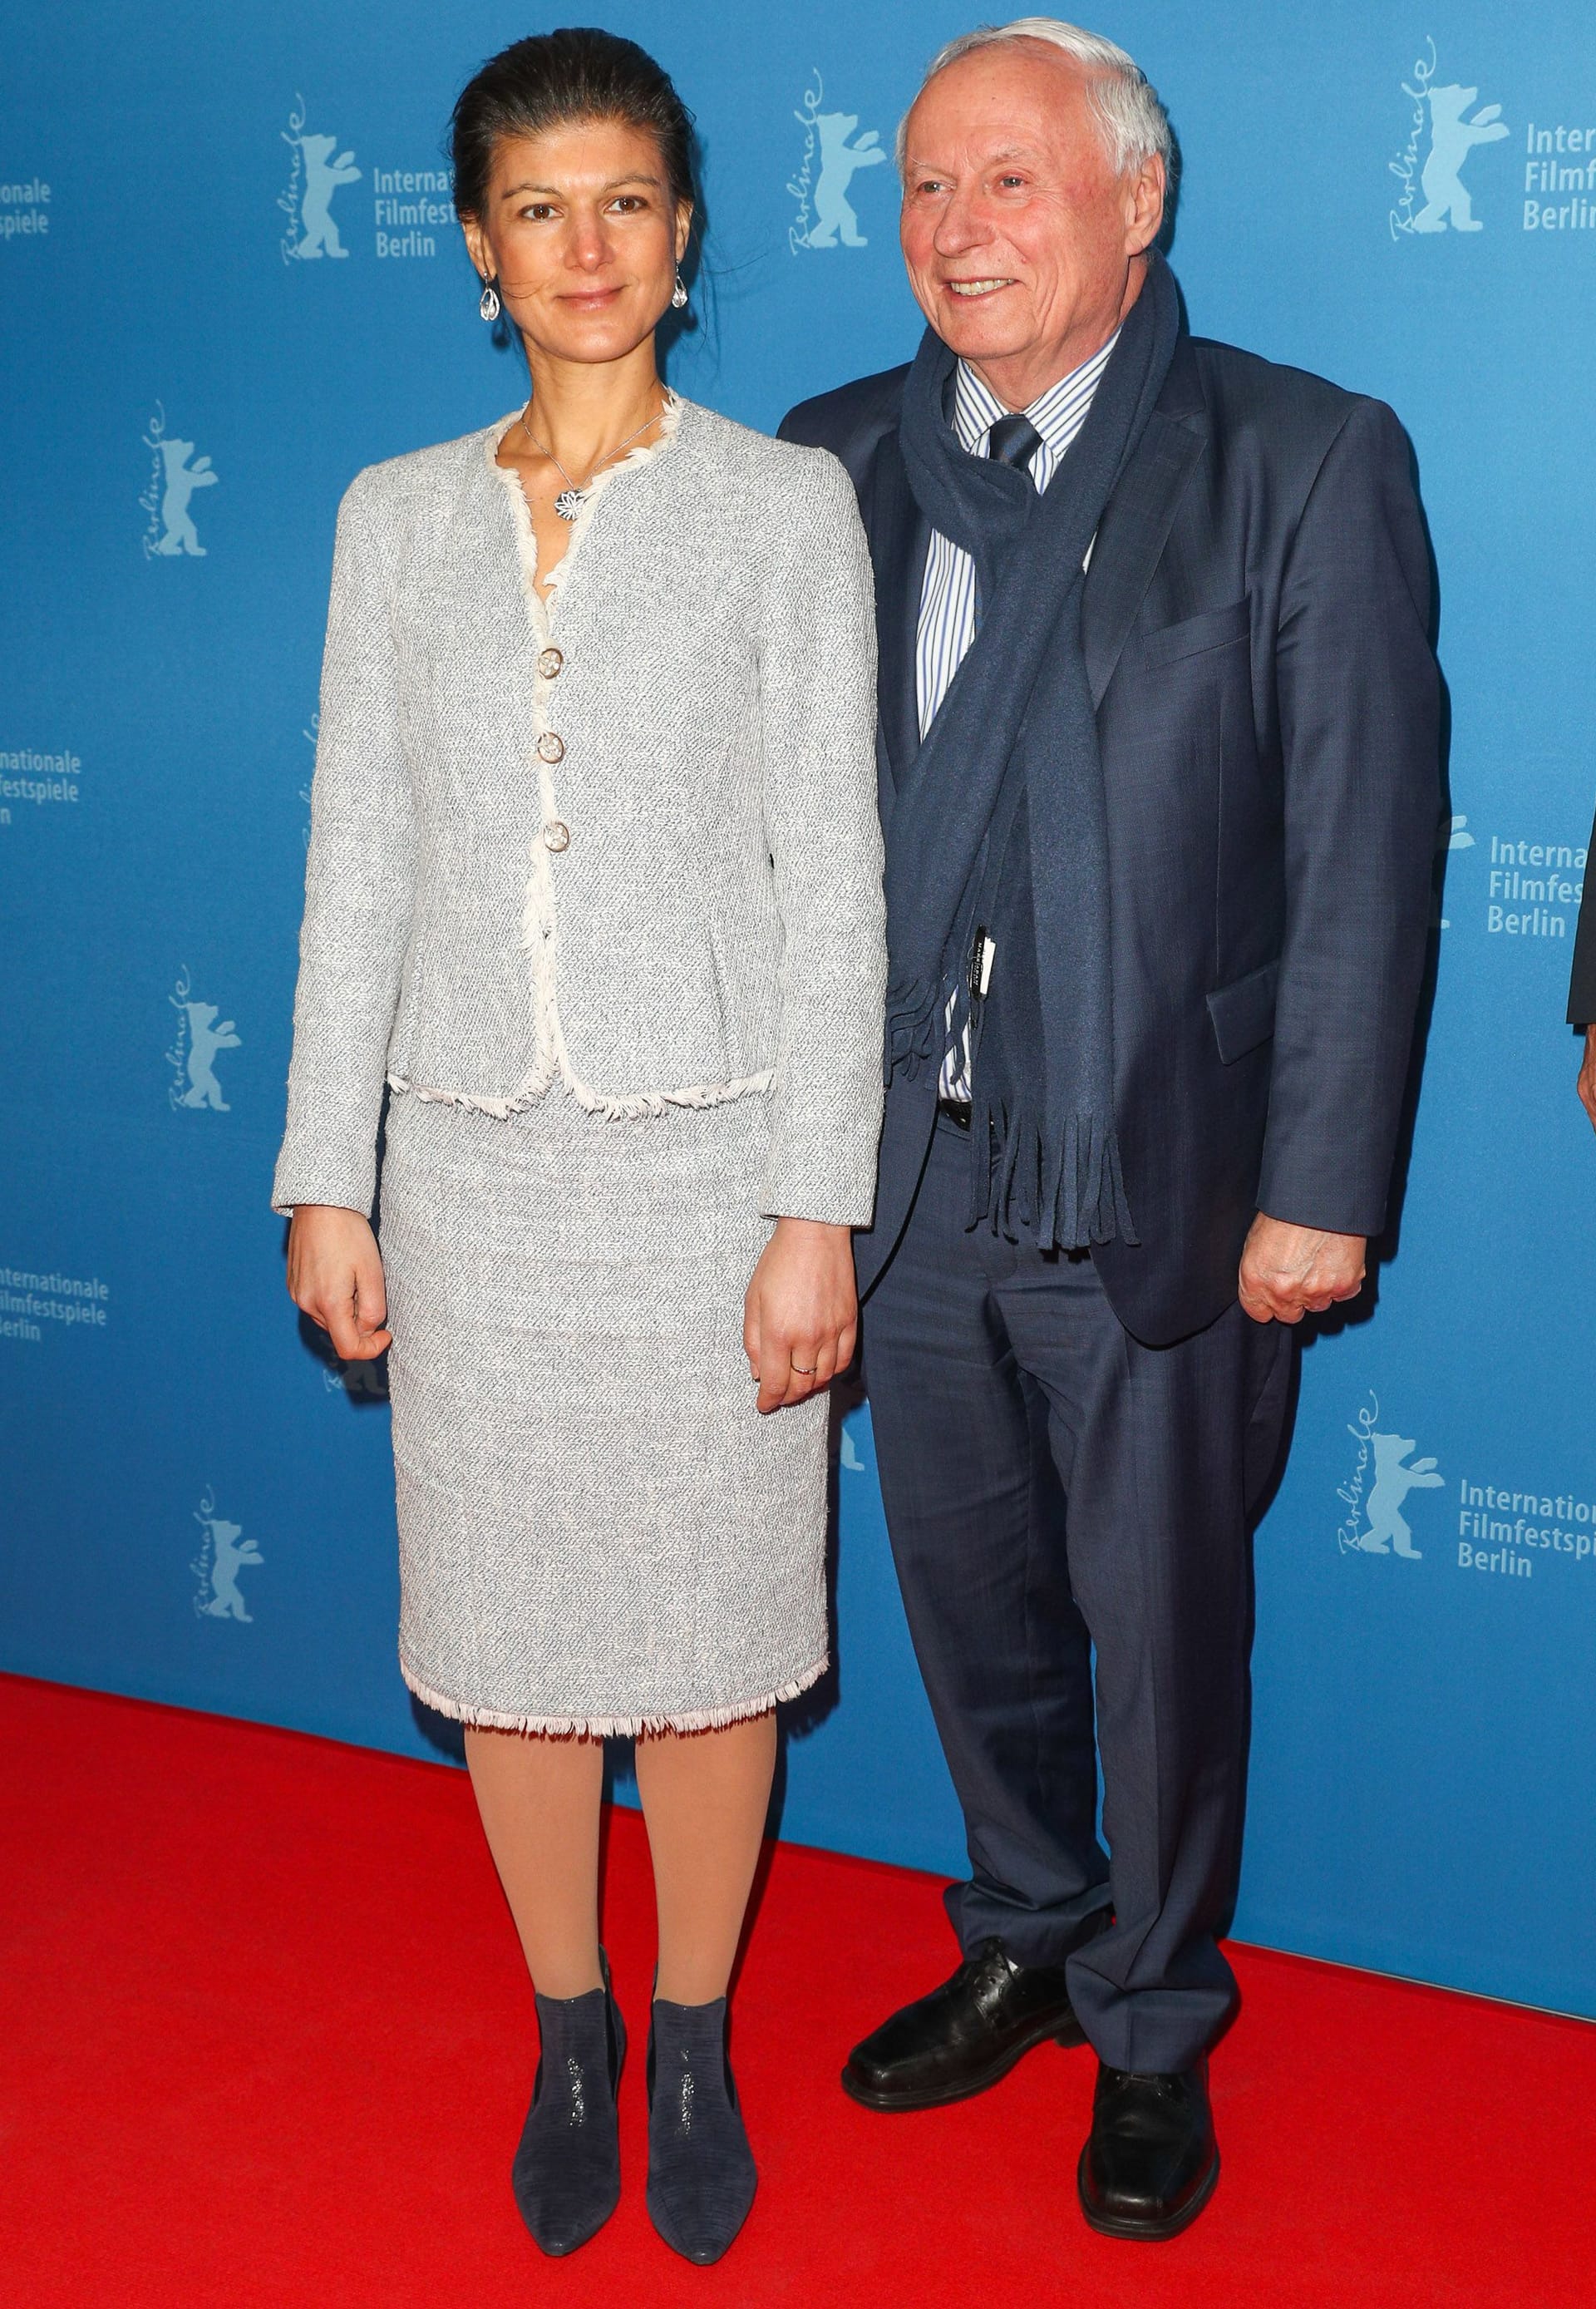 Sahra Wagenknecht mit Oskar Lafontaine im Februar 2012 bei der 67. Berlinale.